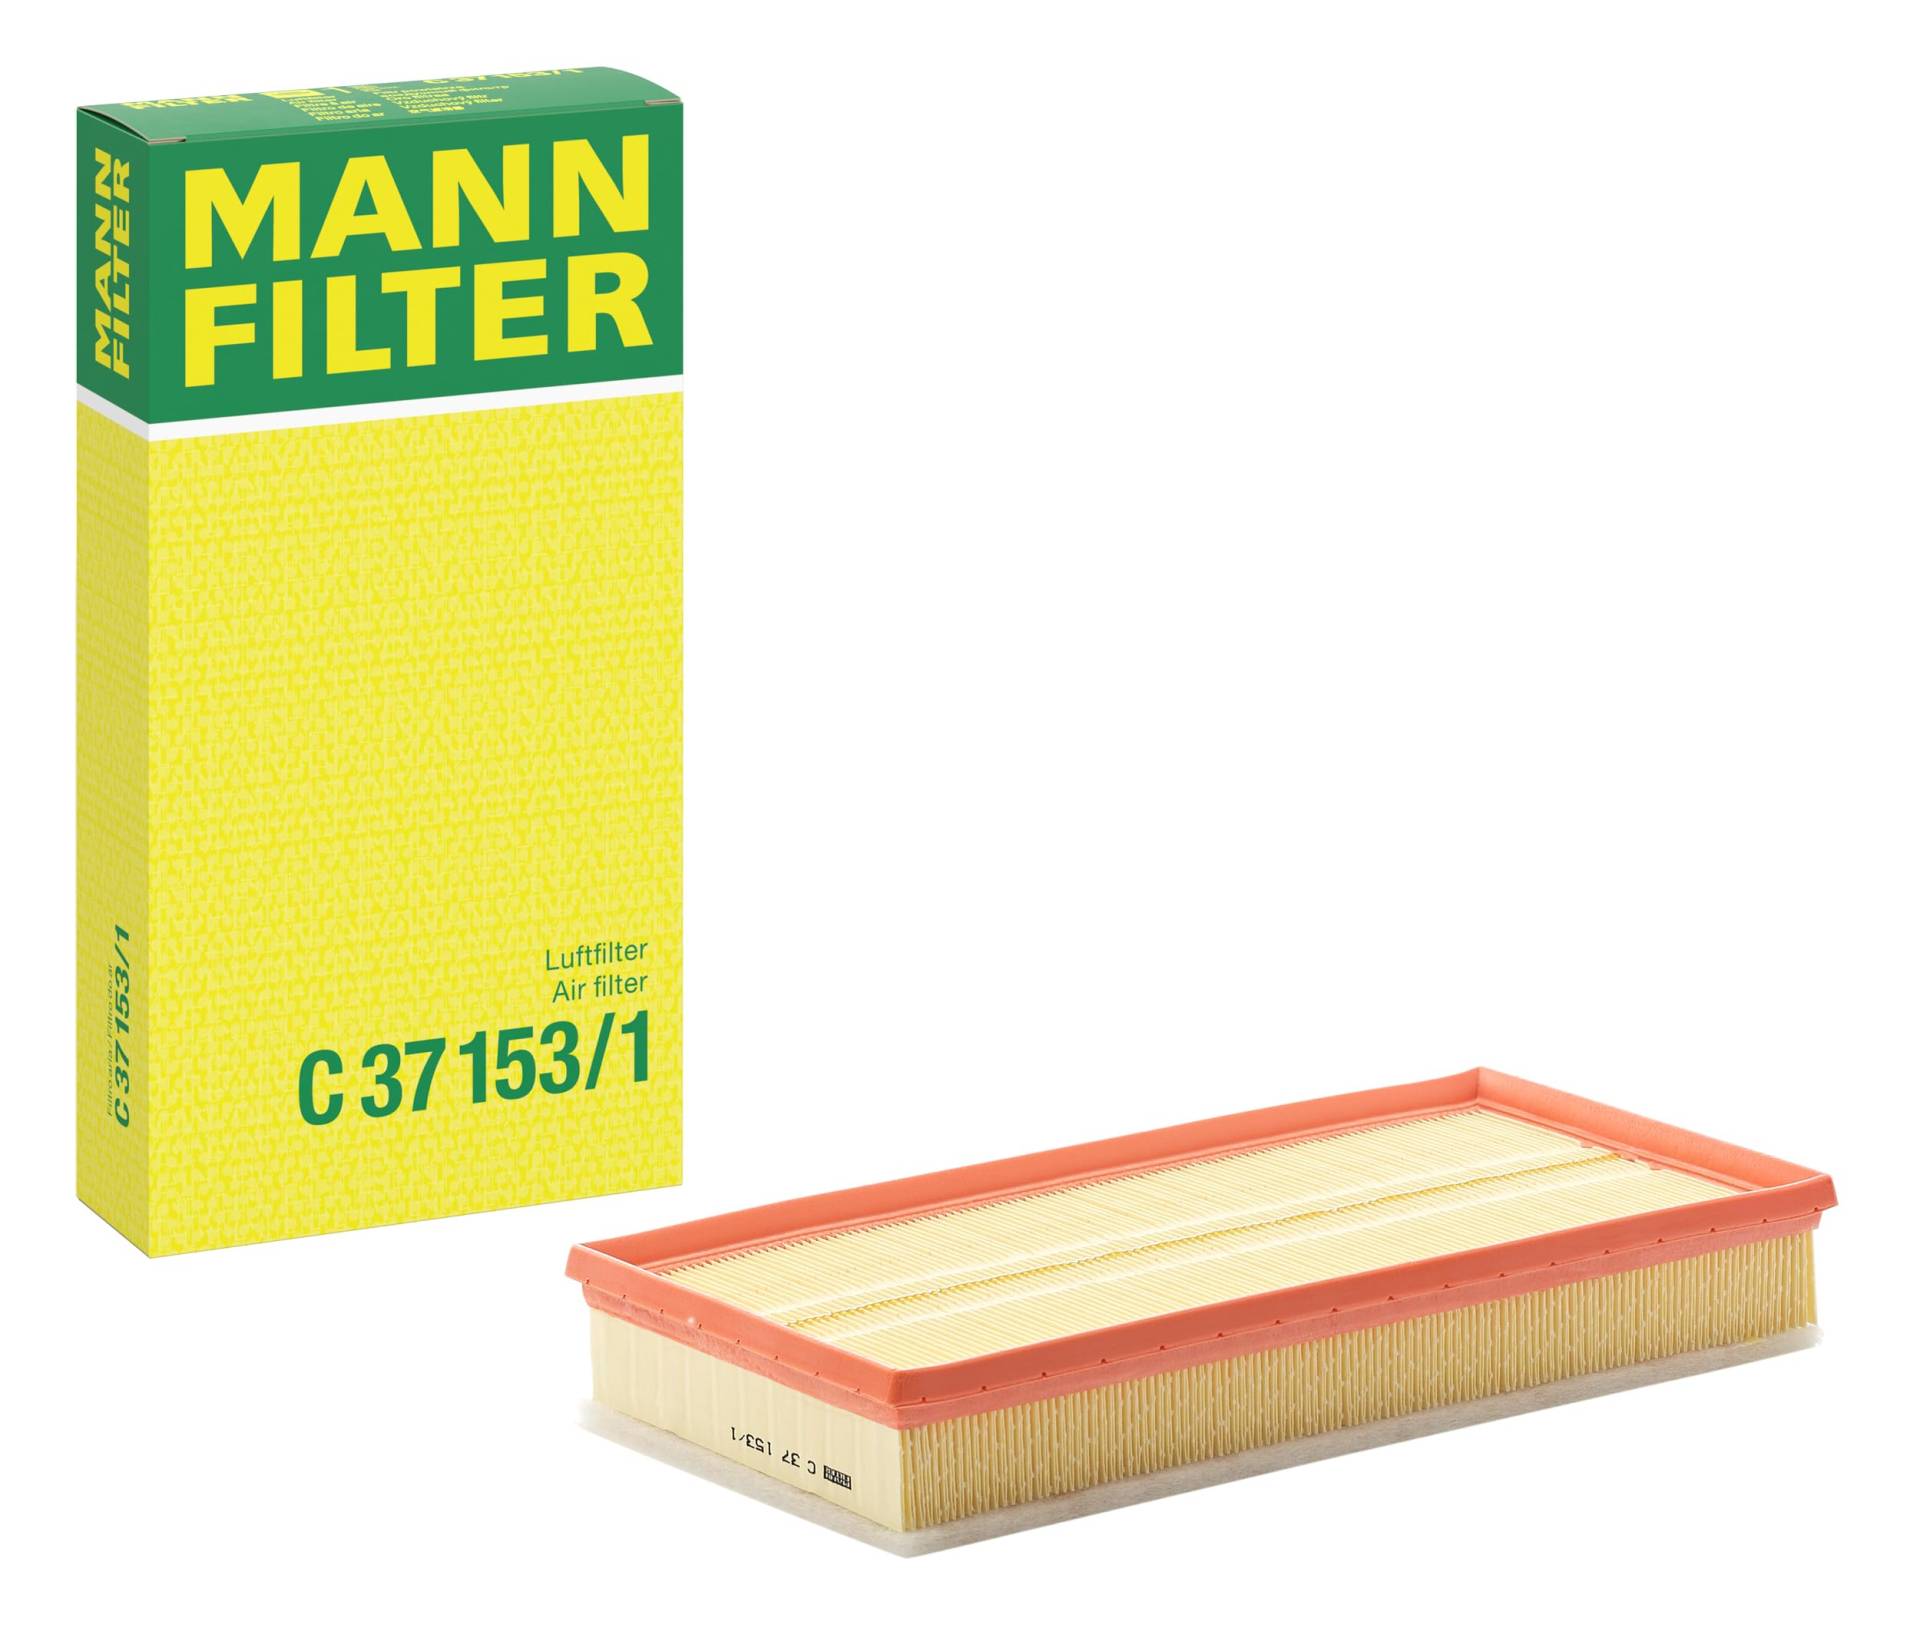 MANN-FILTER C 37 153/1 Luftfilter – Für PKW von MANN-FILTER